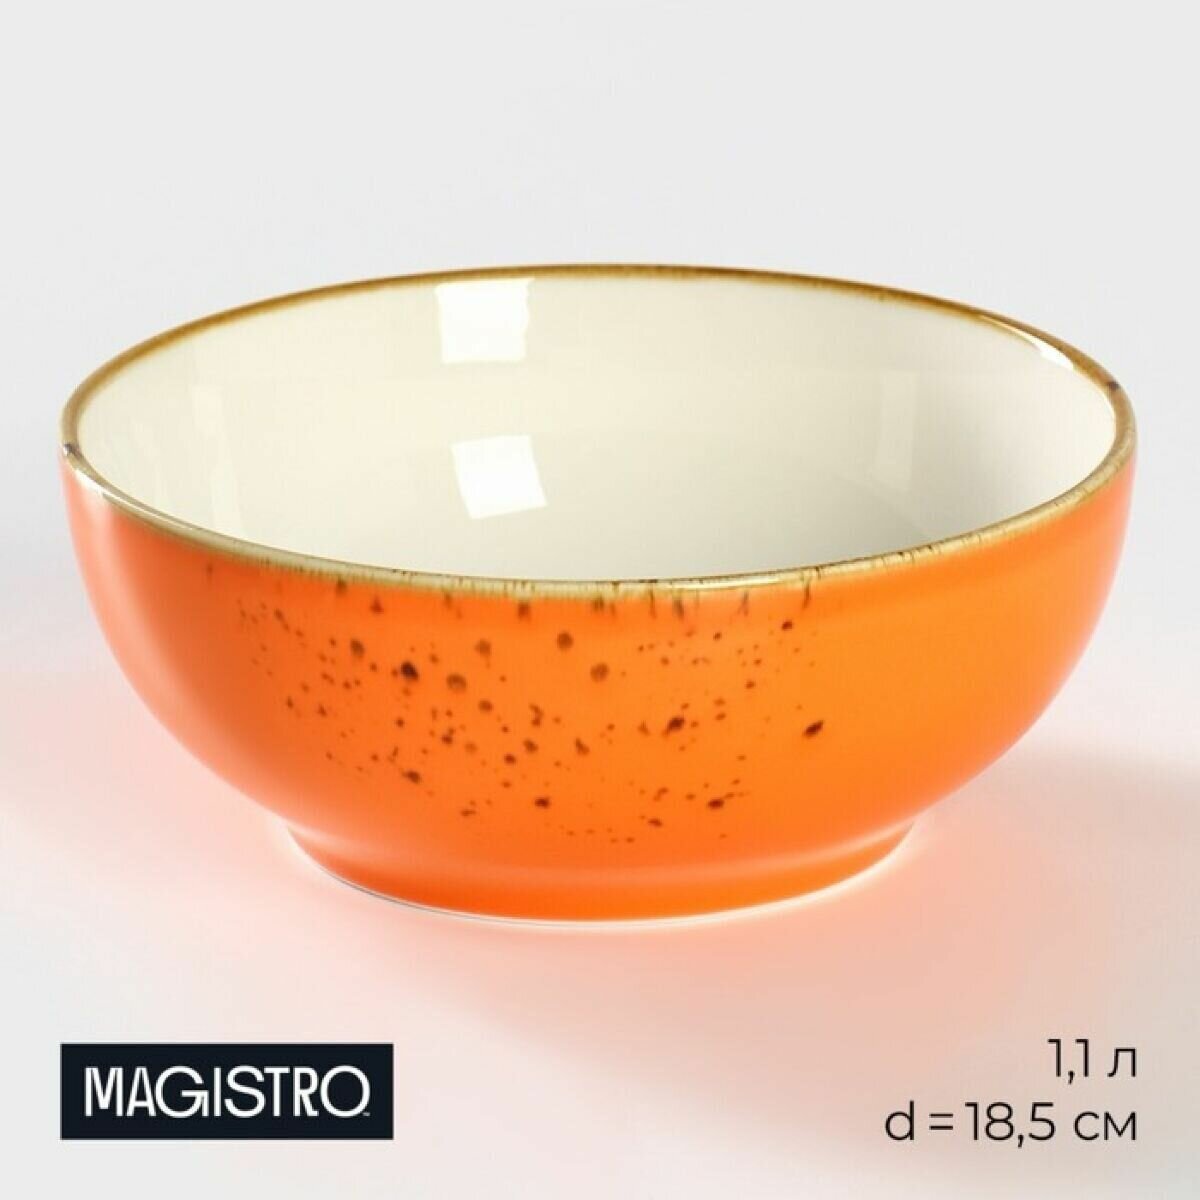 Салатник фарфоровый Magistro Церера , 1,1 л, d 18,5 см, цвет оранжевый